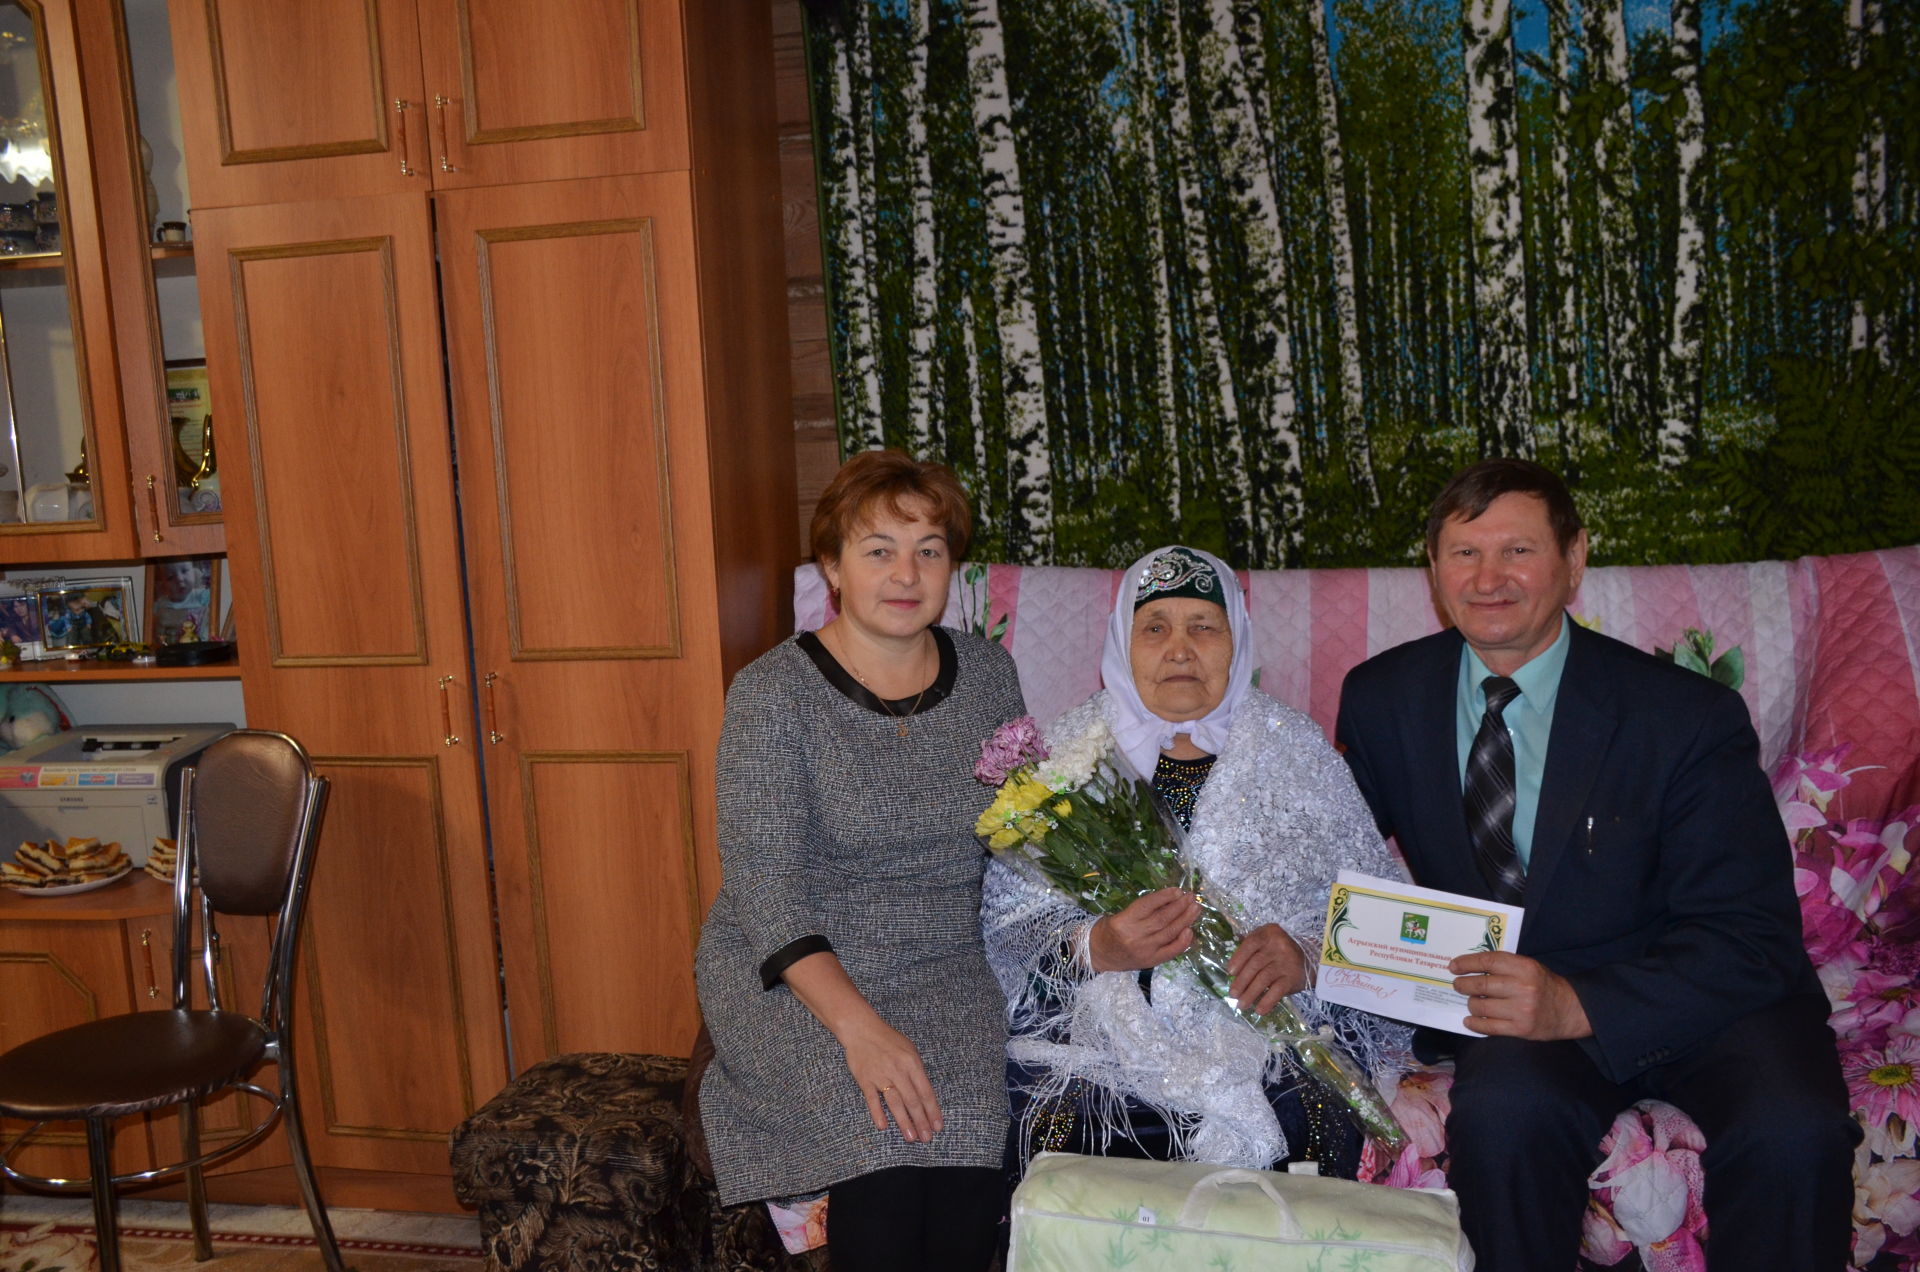 Галима Самигуллина, которой исполнилось 90 лет, живет со своей невесткой, как мама и дочь